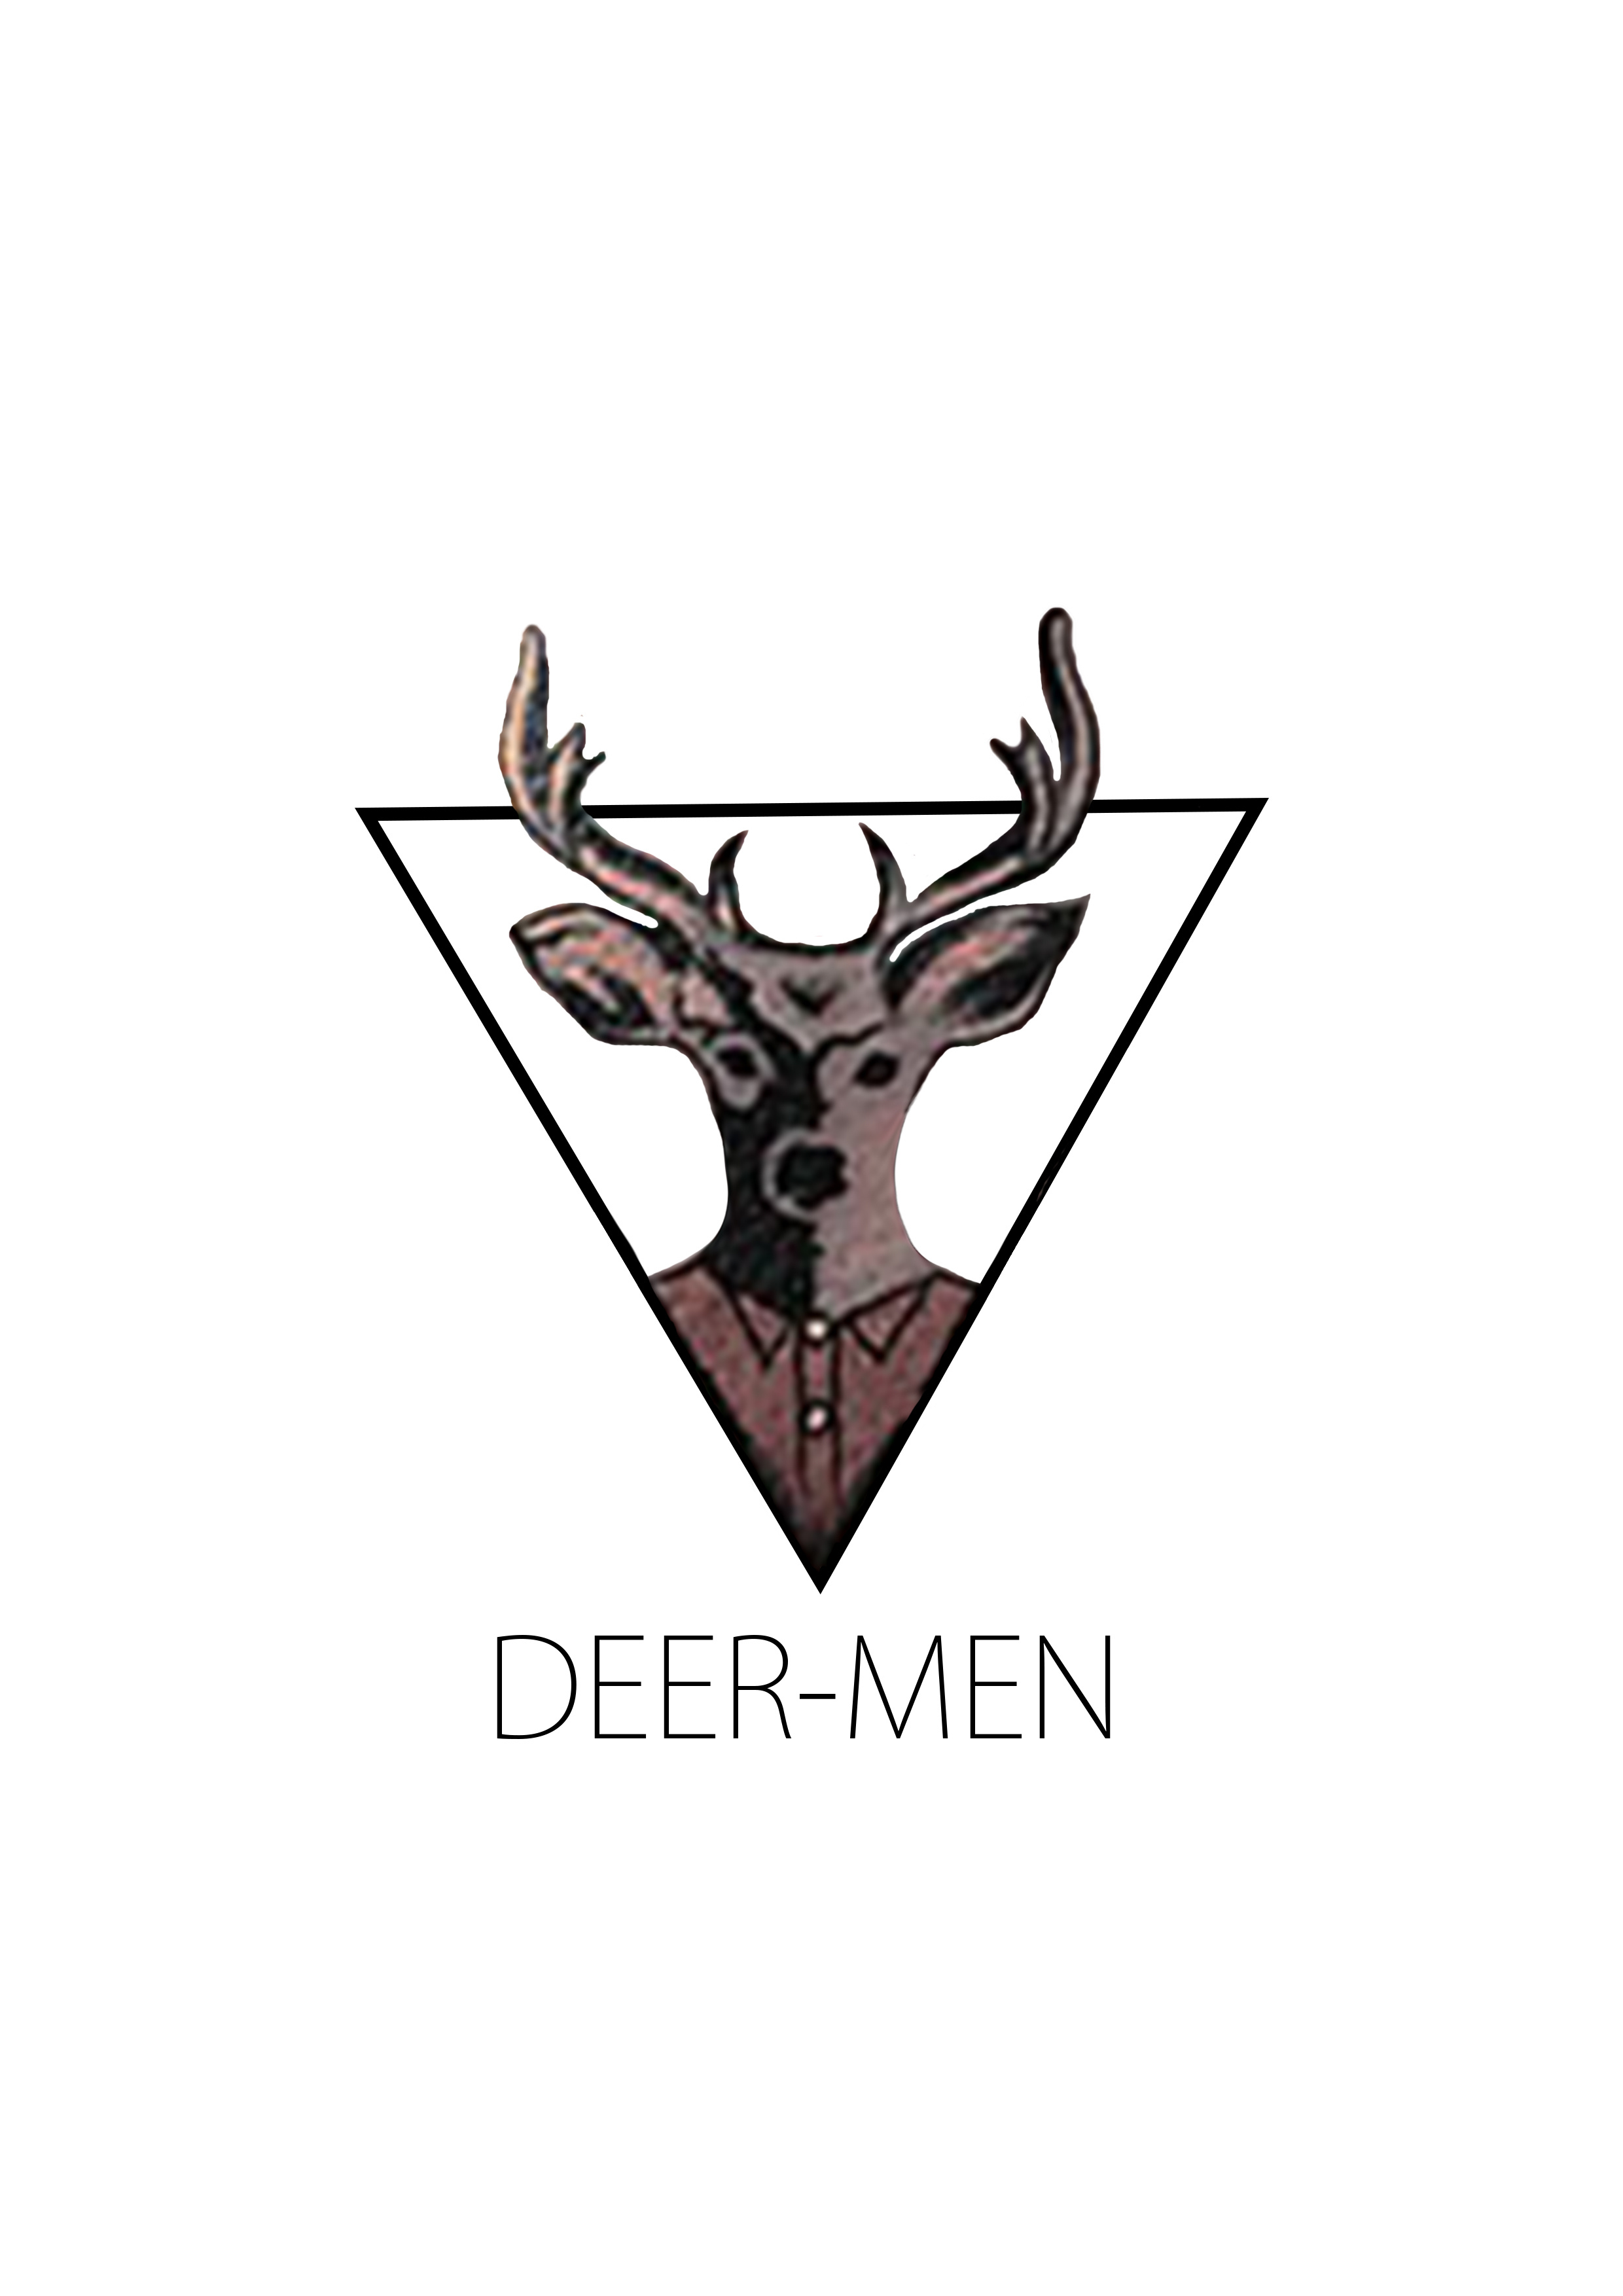 鹿logo如何设计（有1个衣服牌子标志的图案是小鹿叫甚么名字 ）__鹿logo如何设计（有1个衣服牌子标志的图案是小鹿叫甚么名字 ）